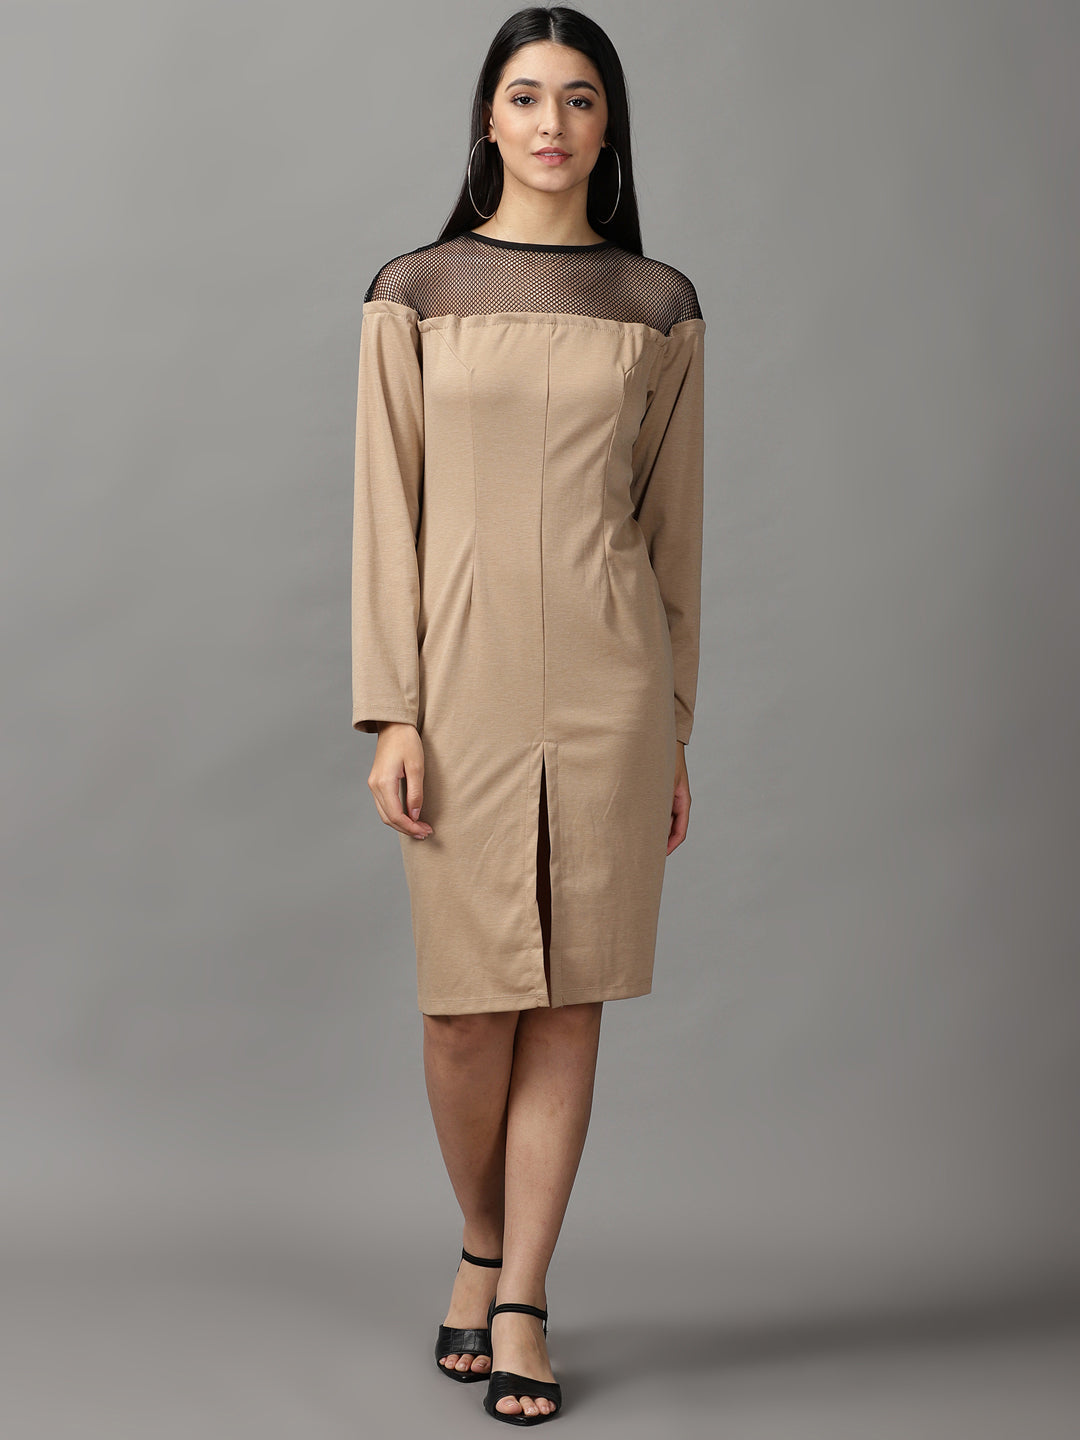 Women's Beige Solid Bodycon Dress